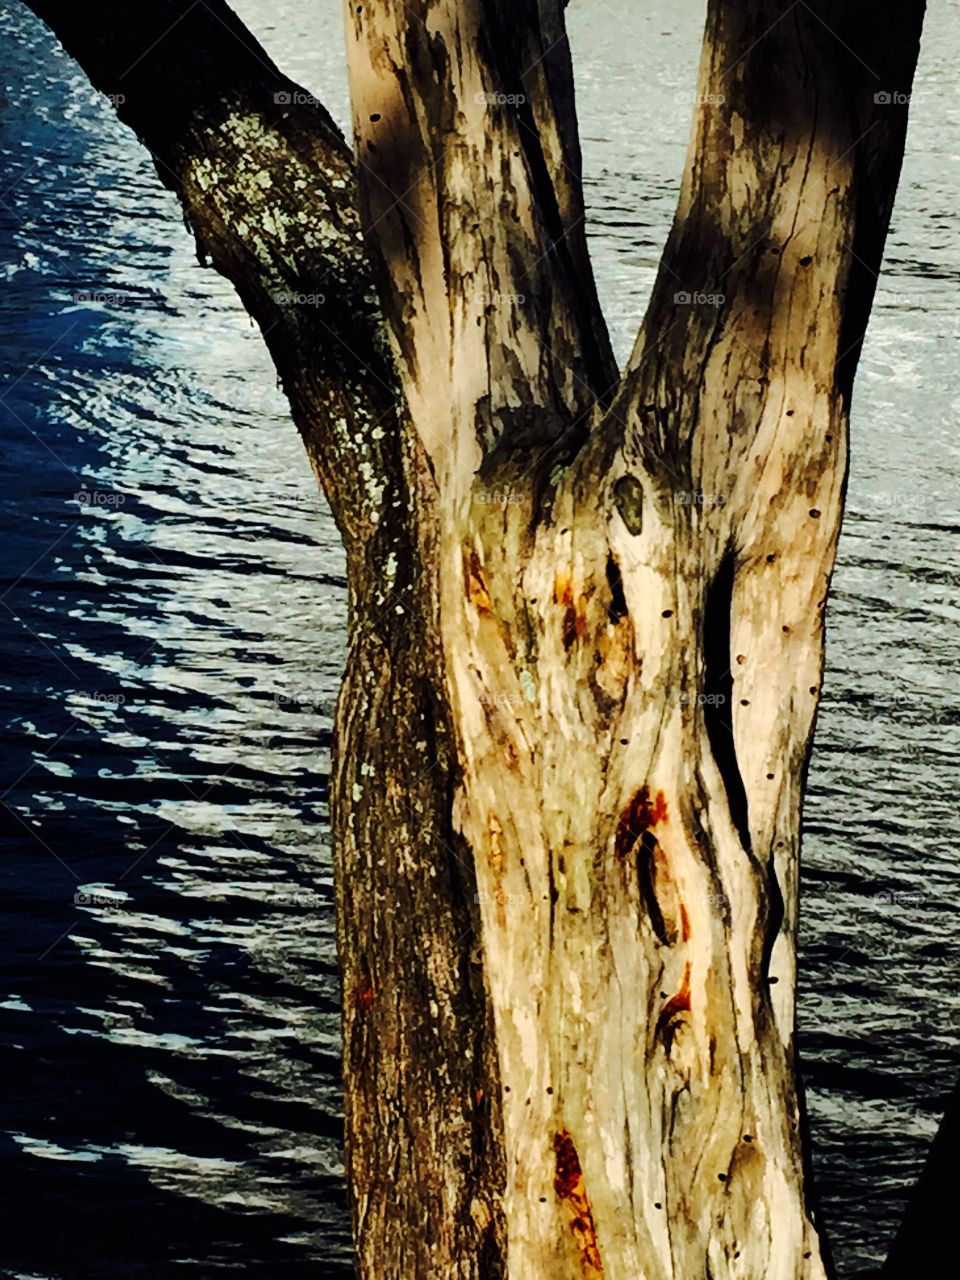 Intercostal driftwood. Driftwood on Florida iIntracoastal Waterway in Hollywood Beach